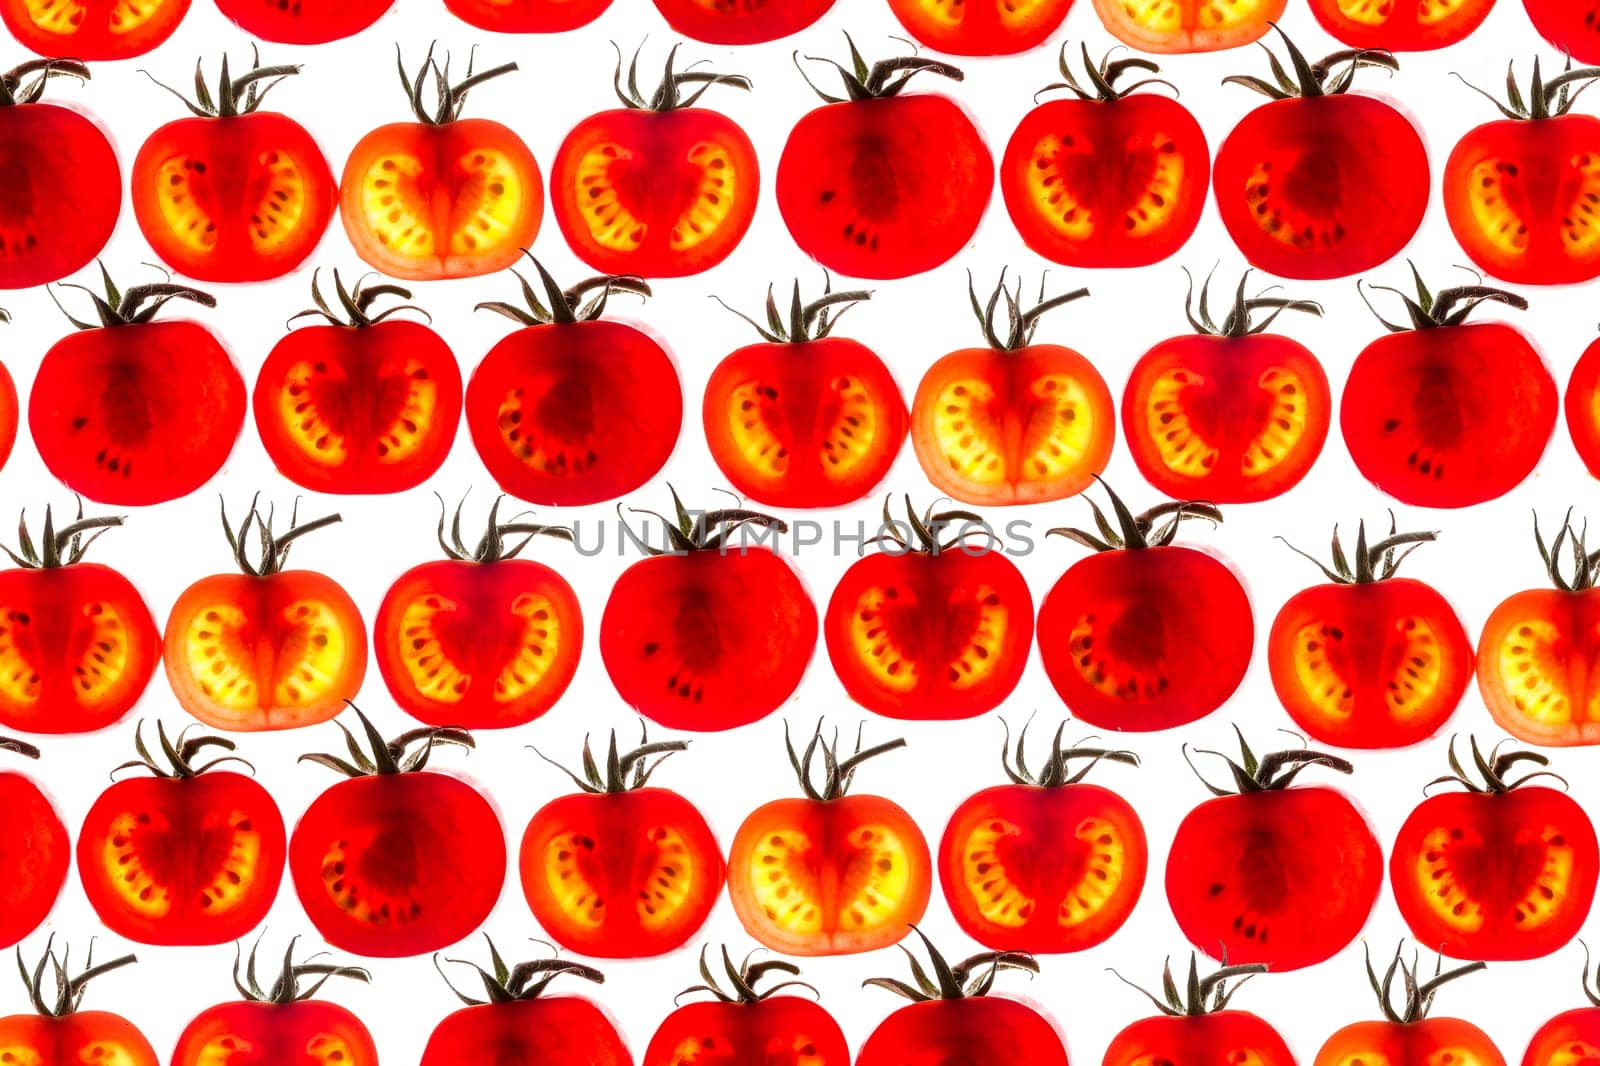 Tomato slice backlit by nazarovsergey